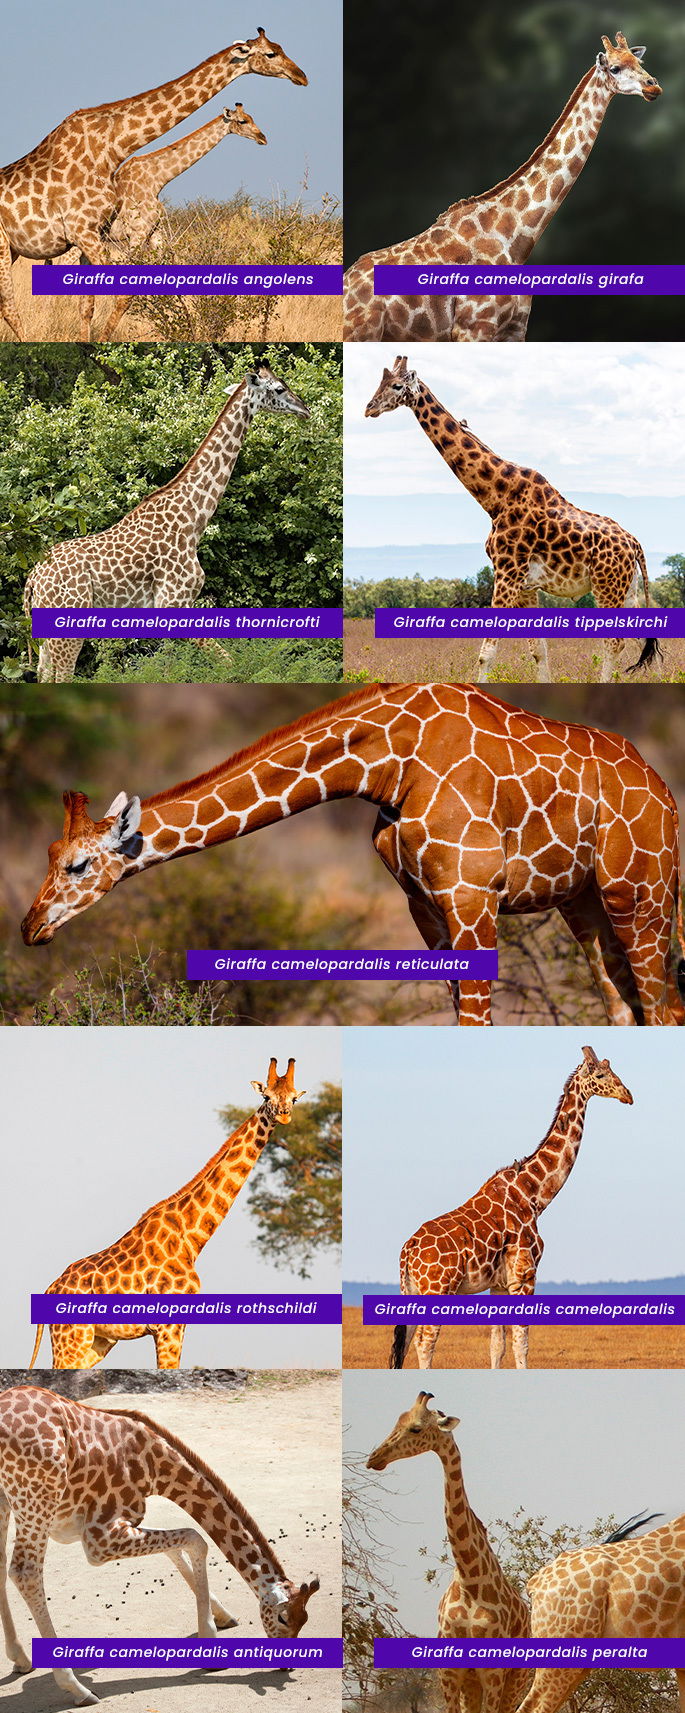 Subespécies de girafas